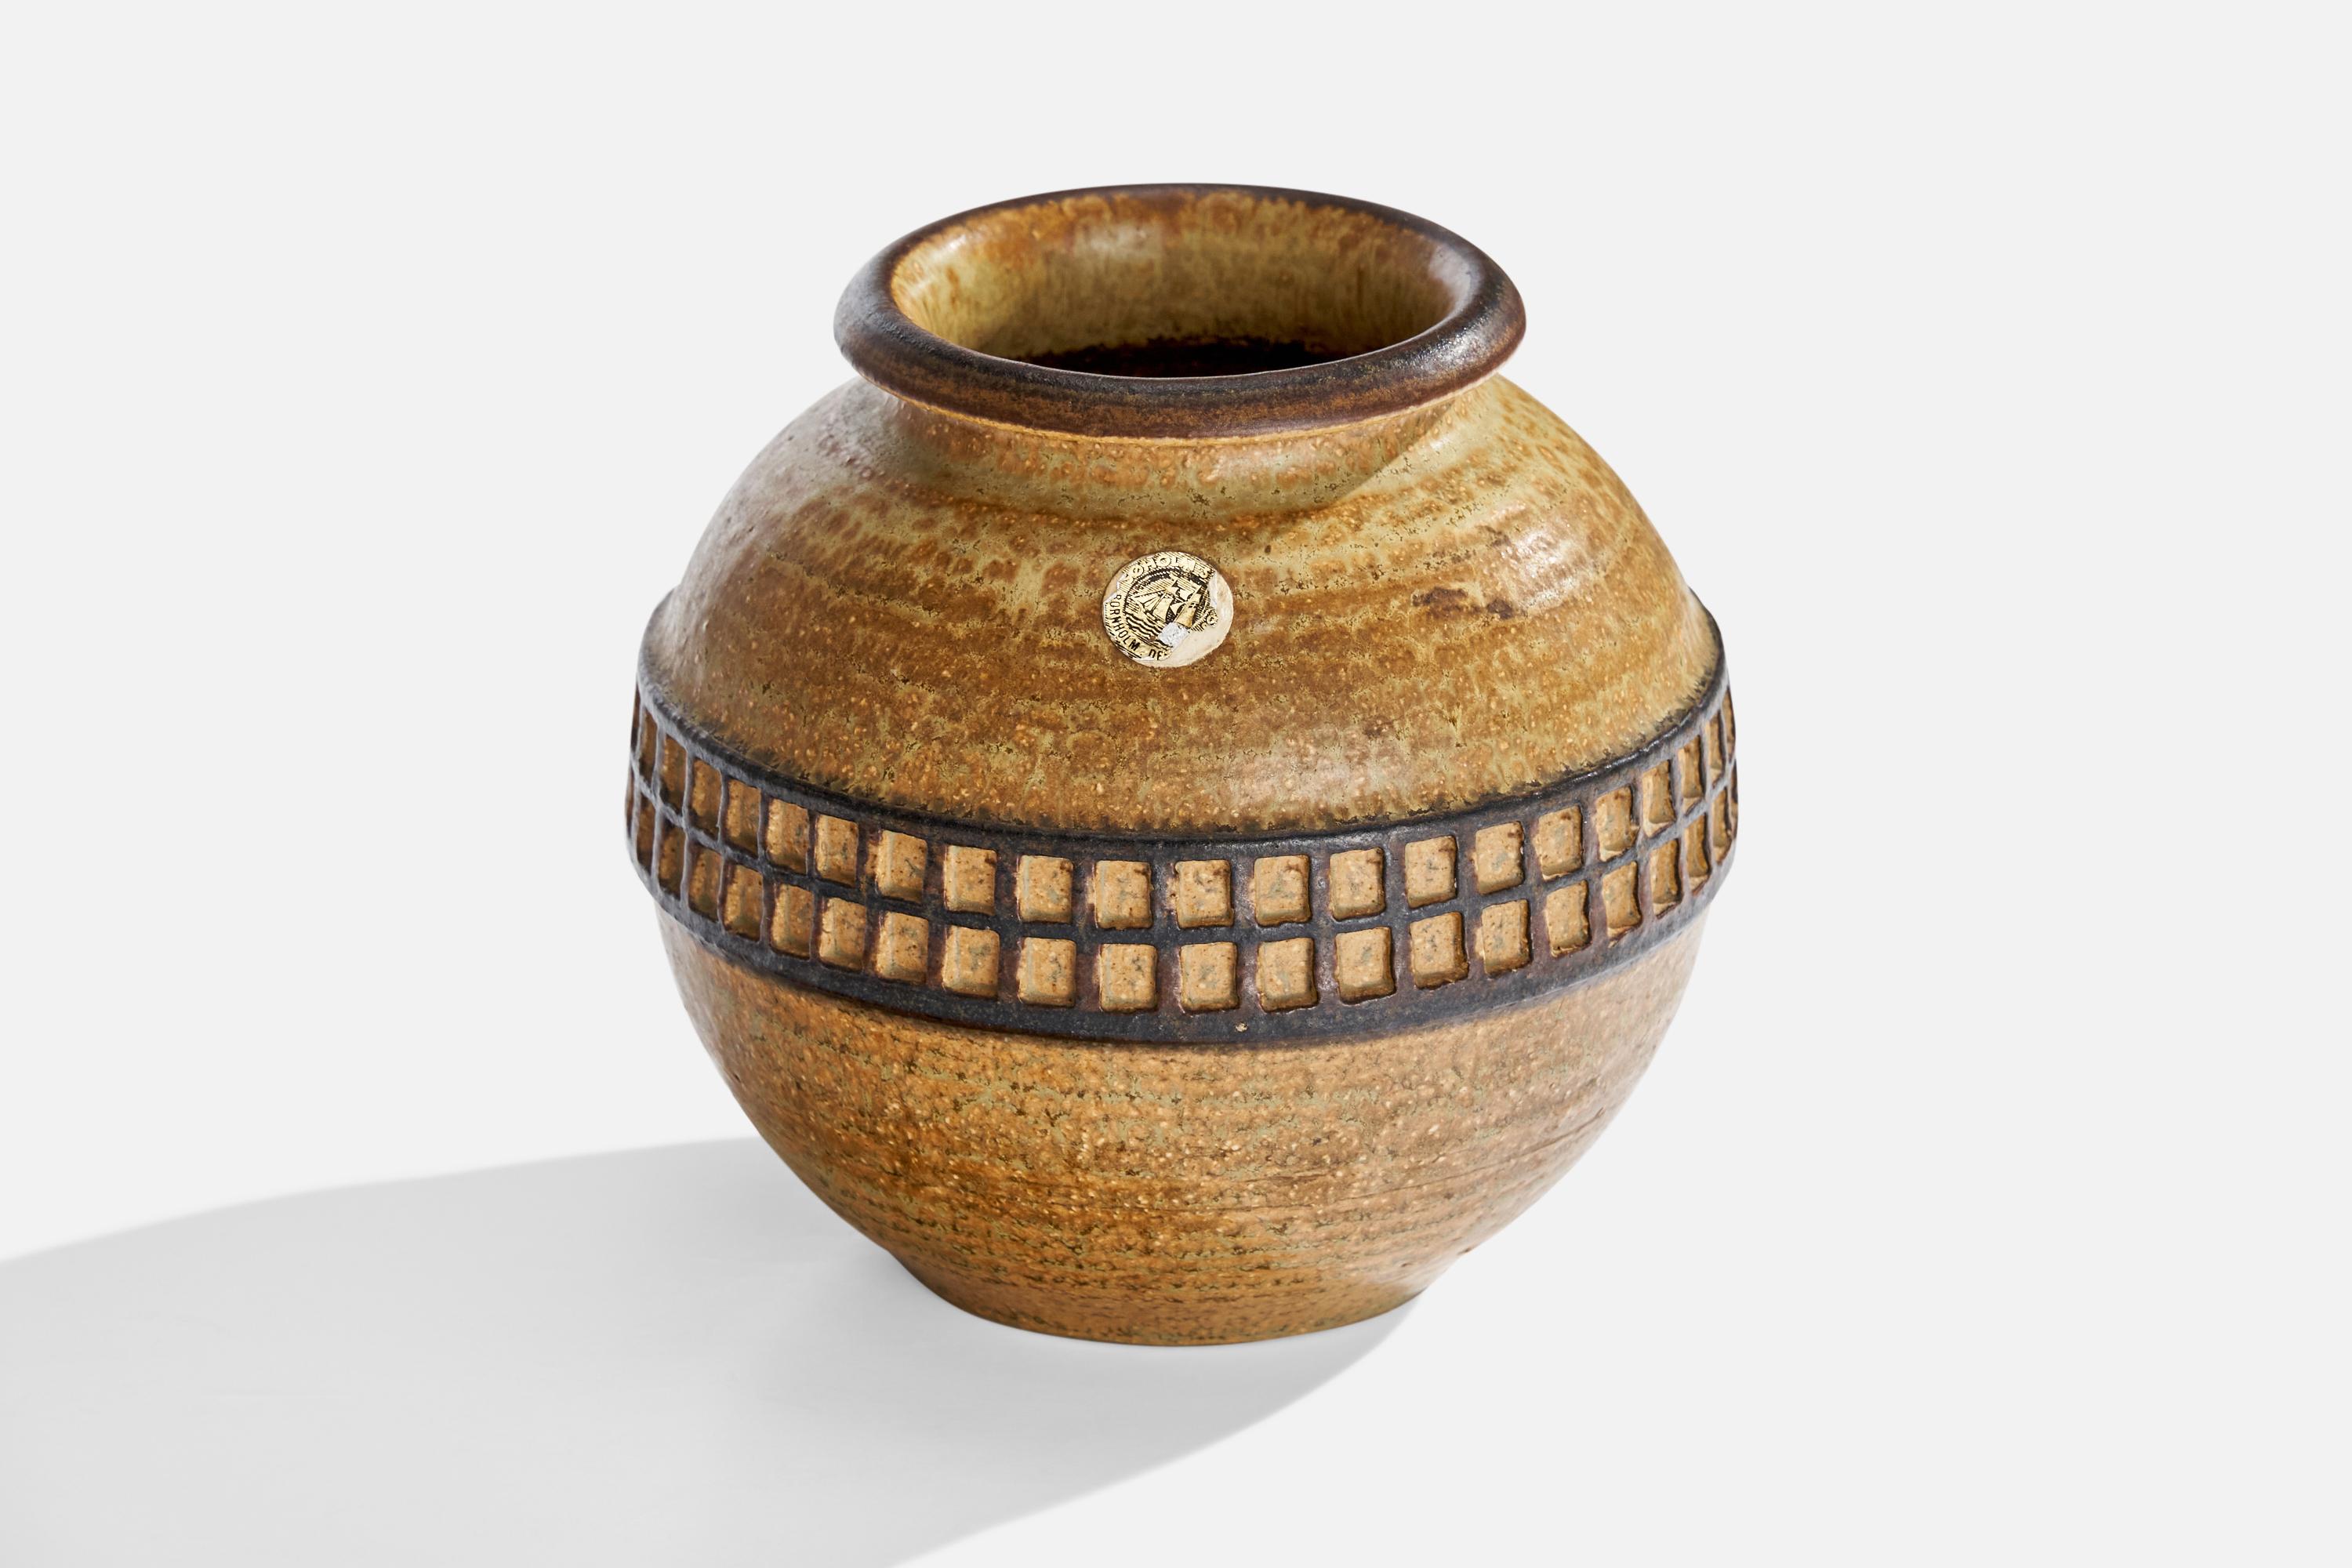 Vase aus beige-braun glasiertem Steingut, hergestellt von Søholm Stentøj, Dänemark, 1960er Jahre.